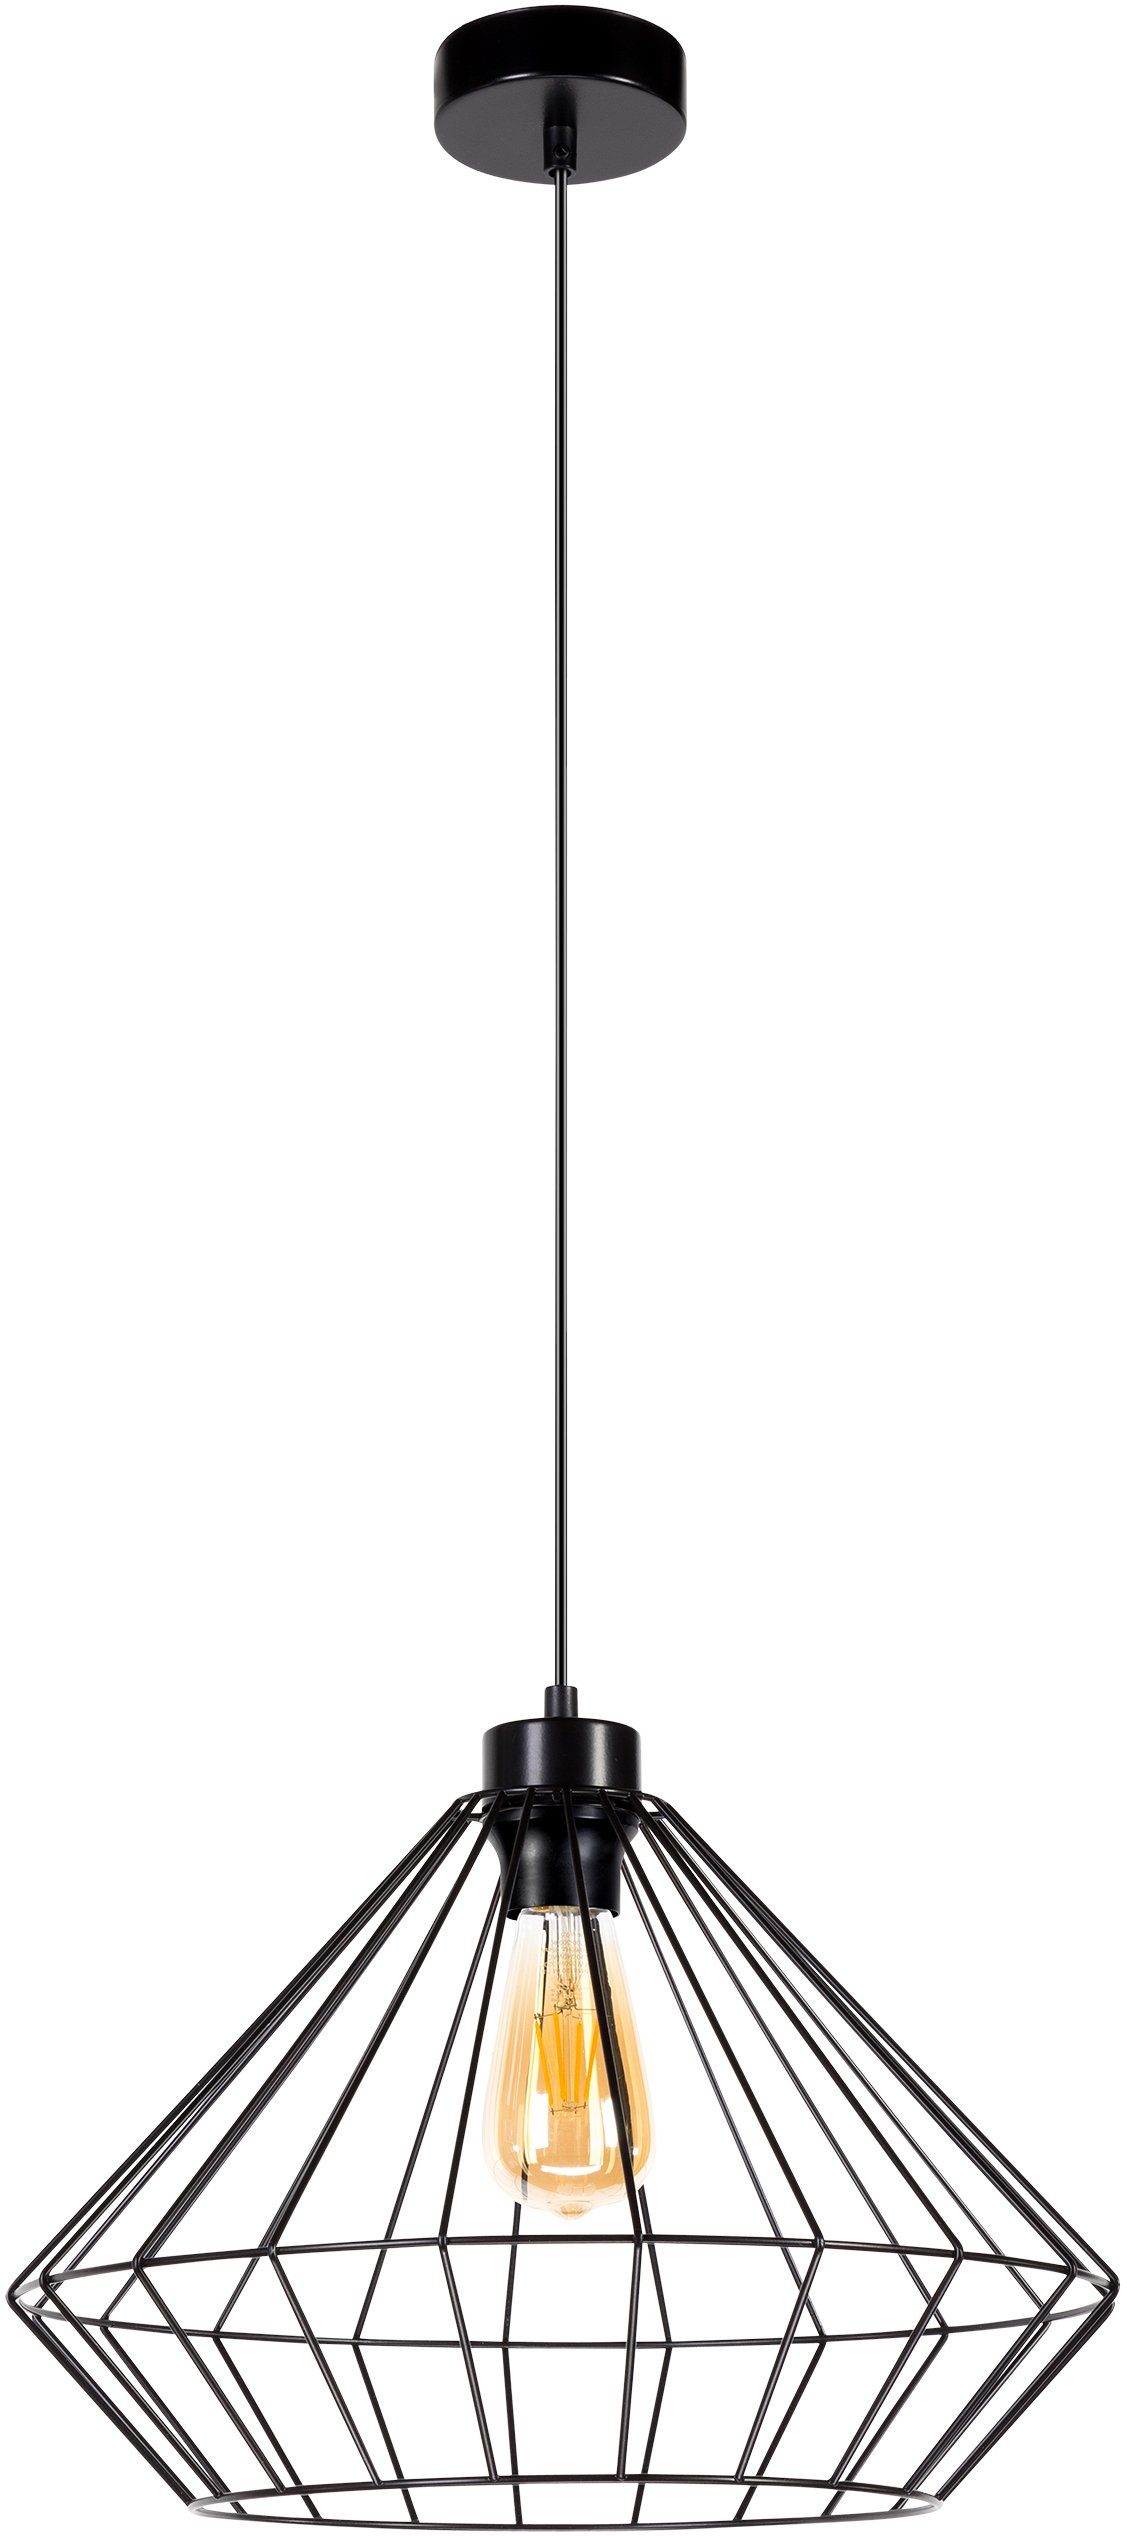 BRITOP LIGHTING Hanglamp RAQUELLE Decoratieve lamp van metaal, bijpassende LM E27 / exclusief, Made in Europe (1 stuk)